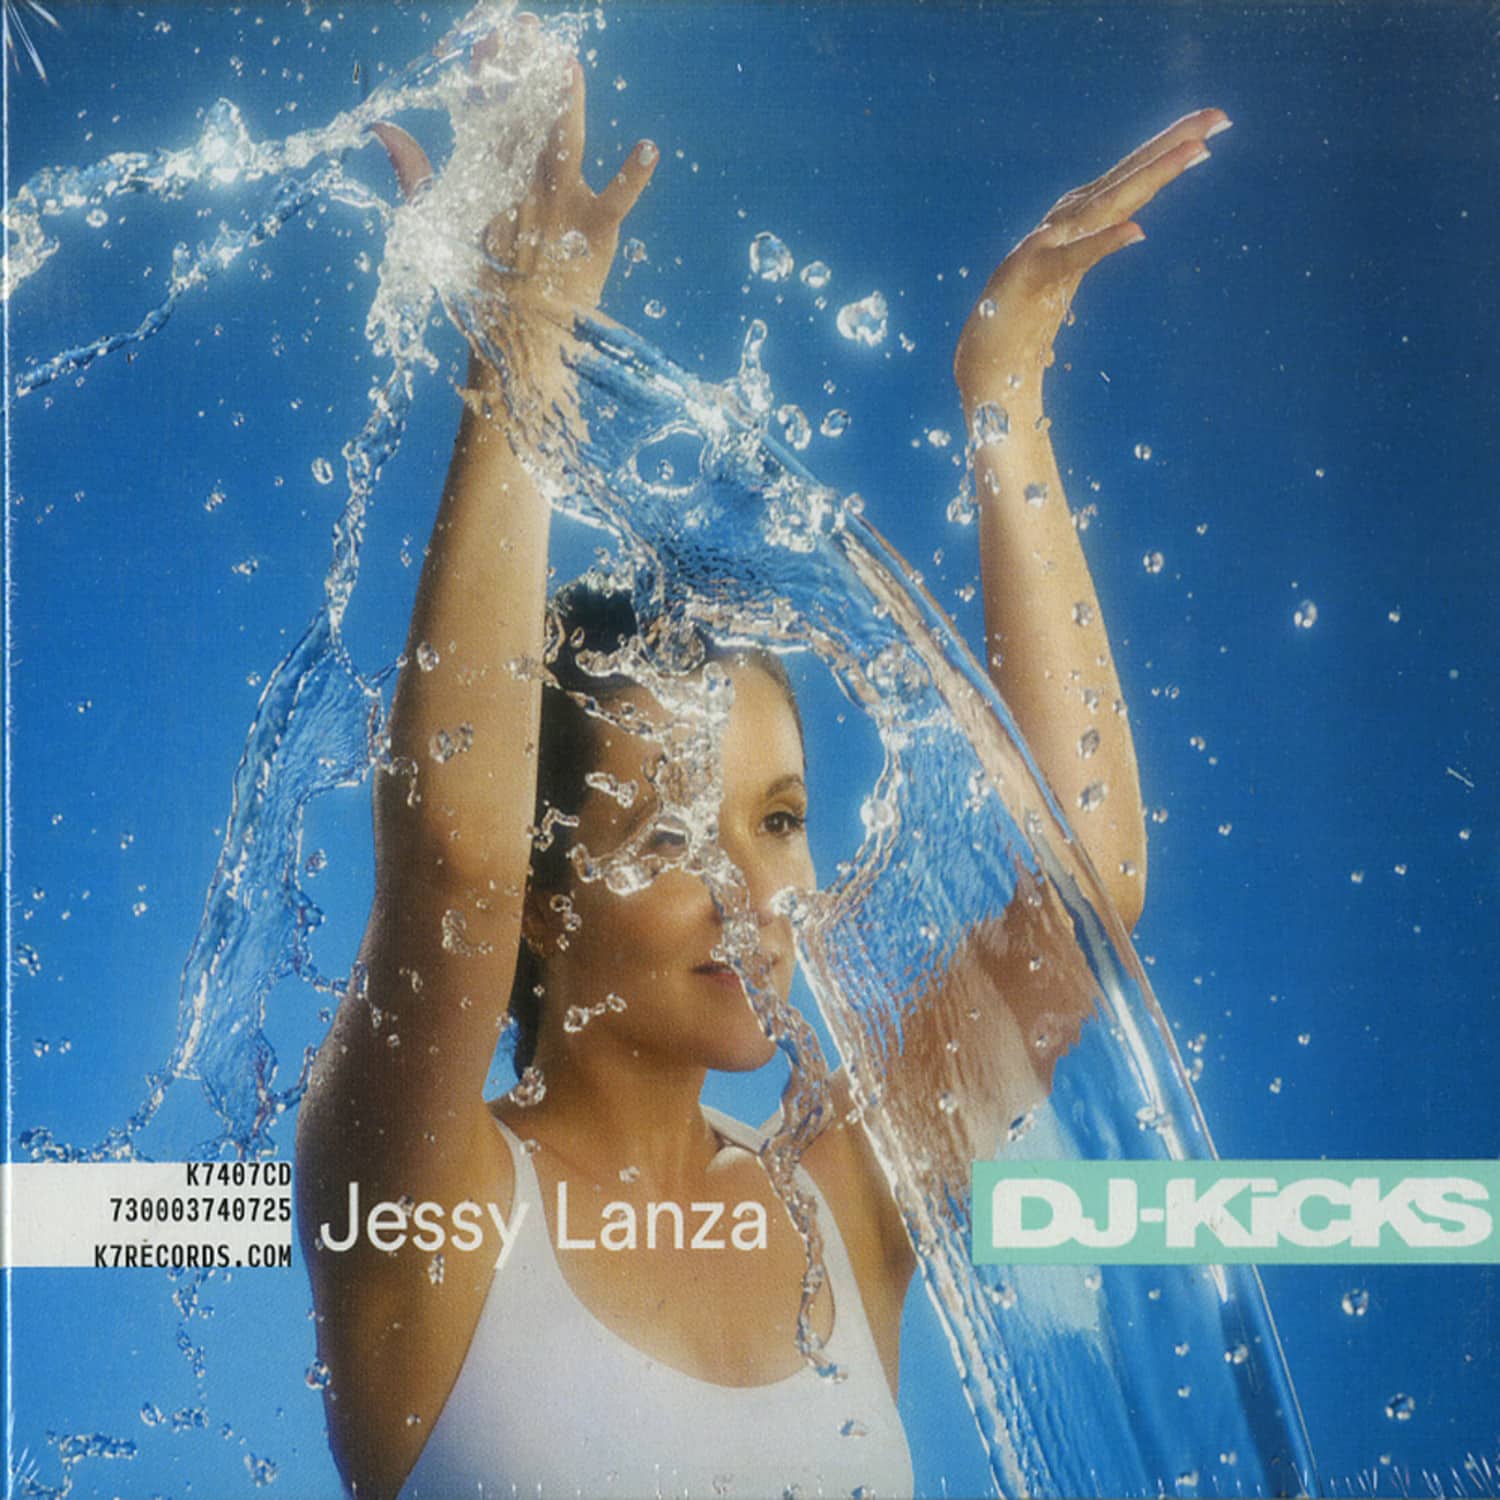 Jessy Lanza - DJ-KICKS 